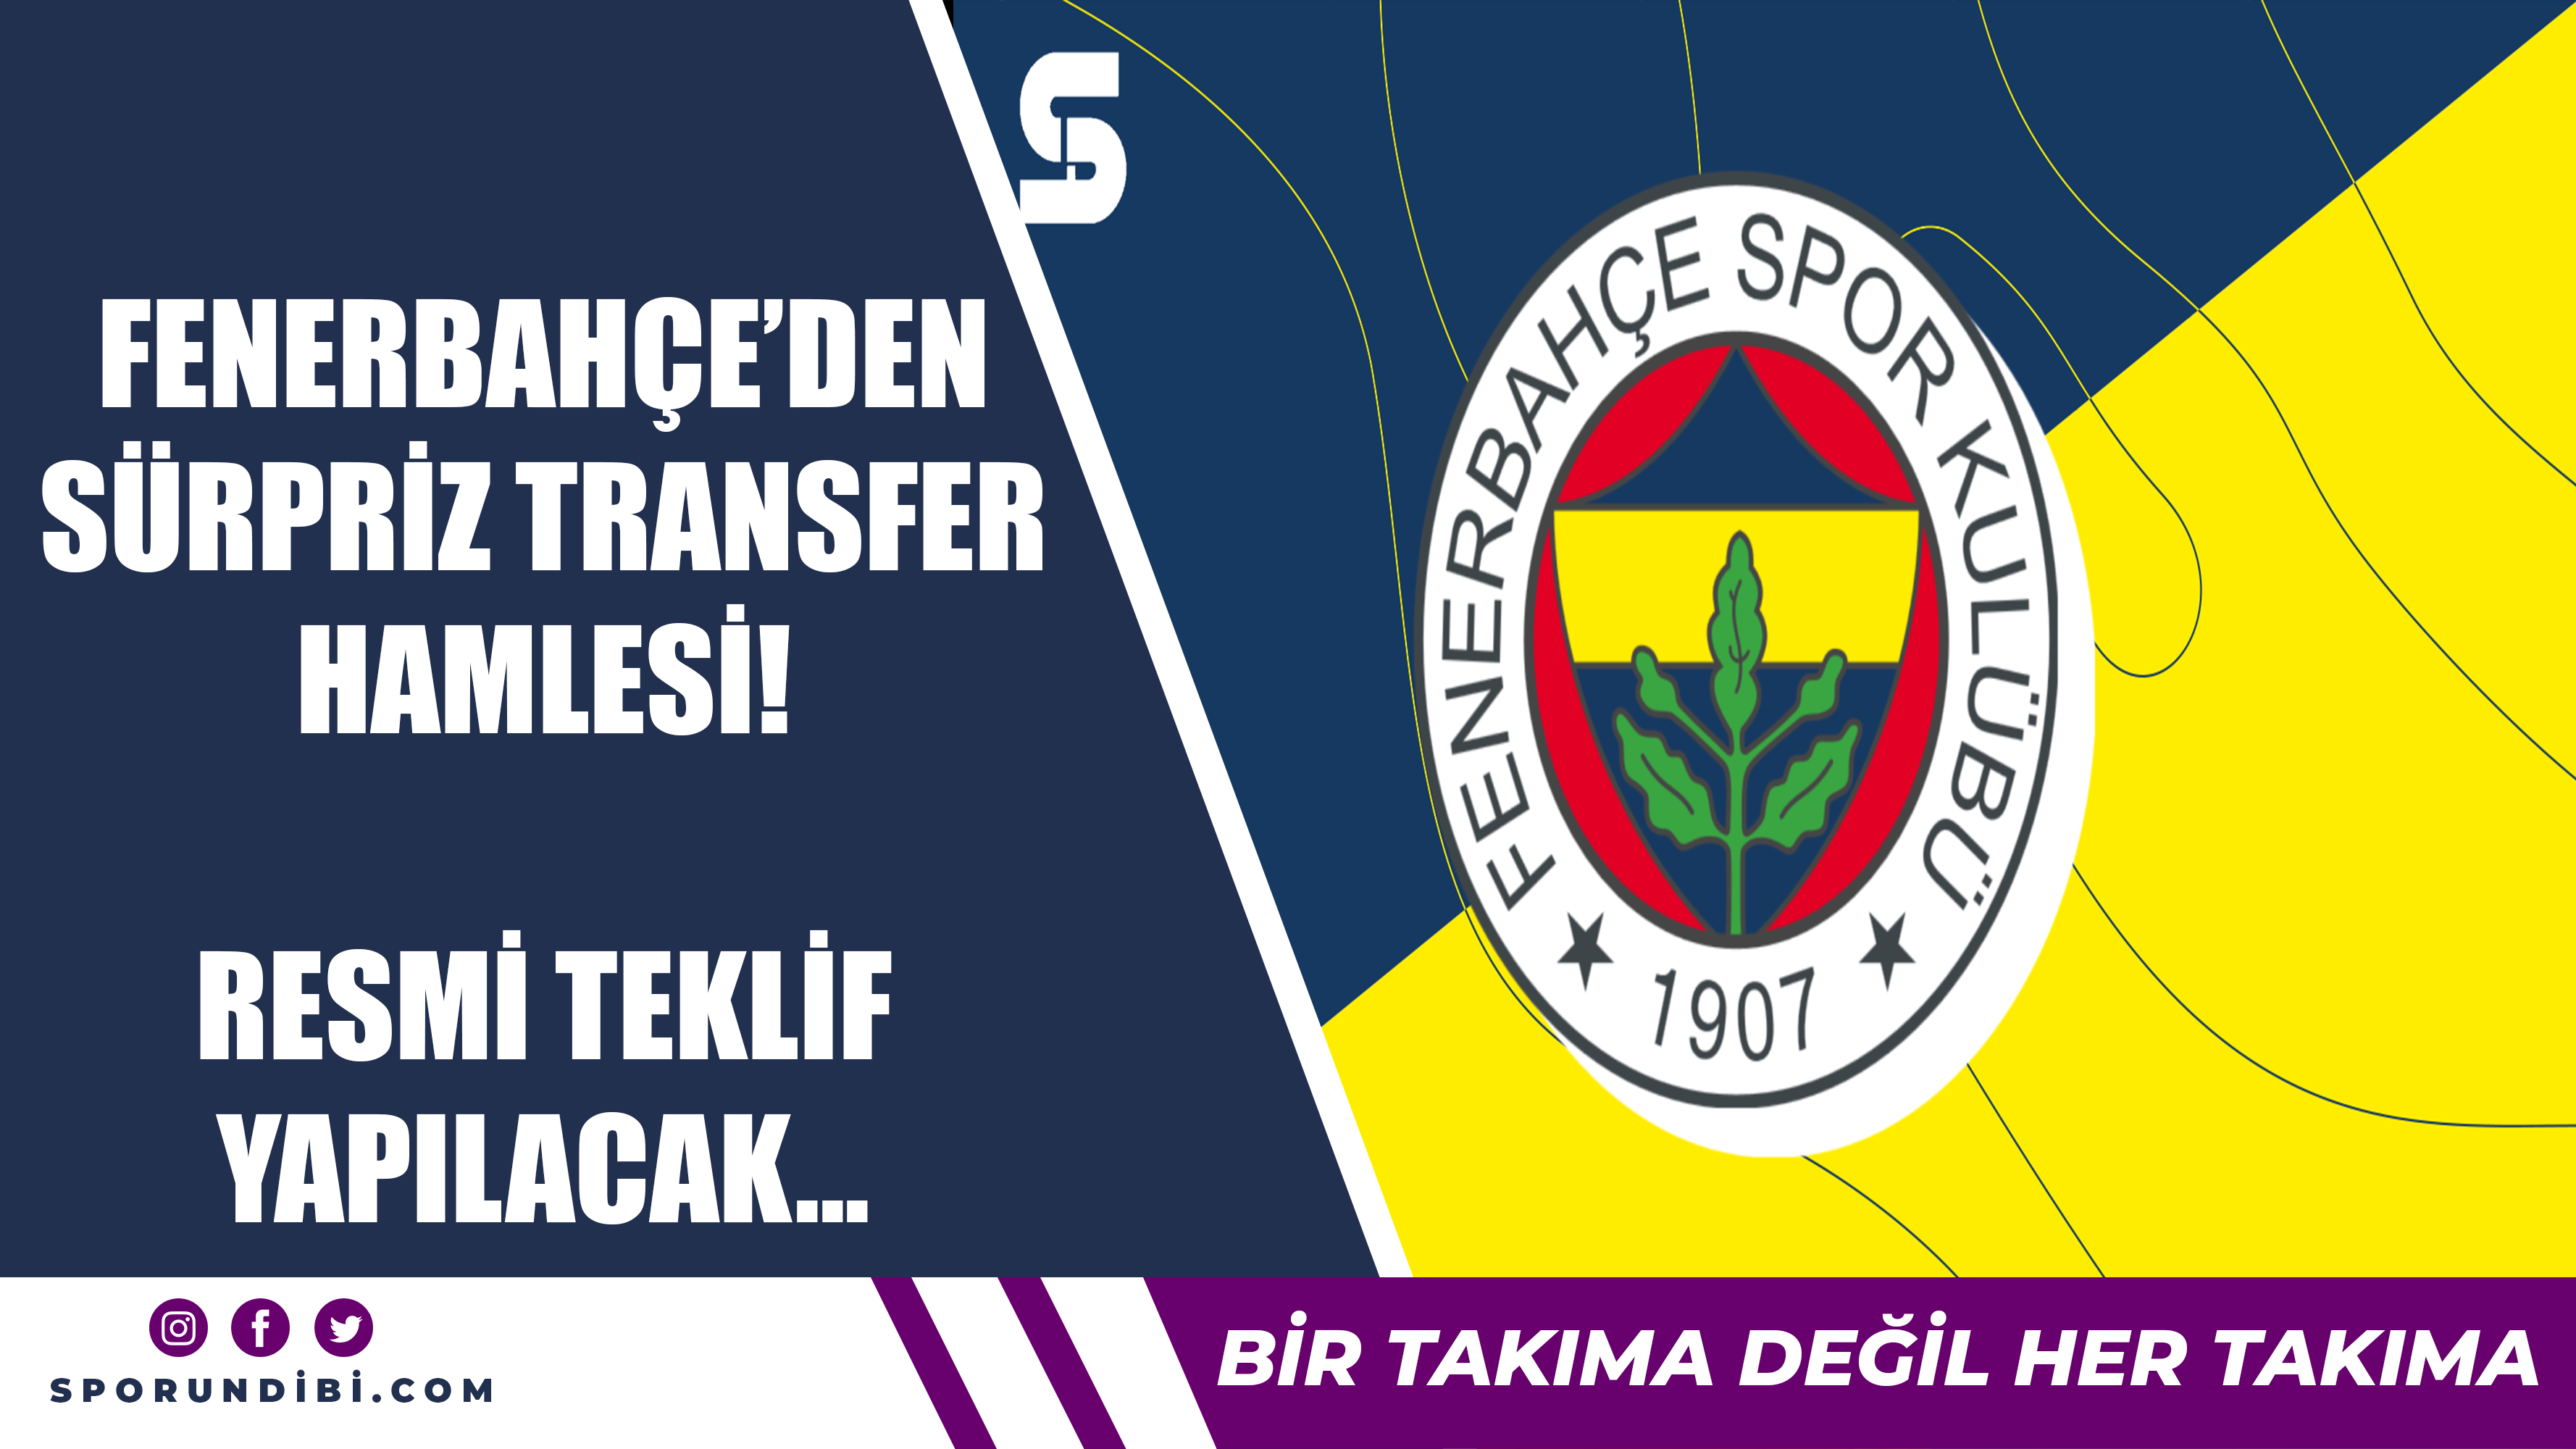 Fenerbahçe'den sürpriz transfer hamlesi! Resmi teklif yapılacak...